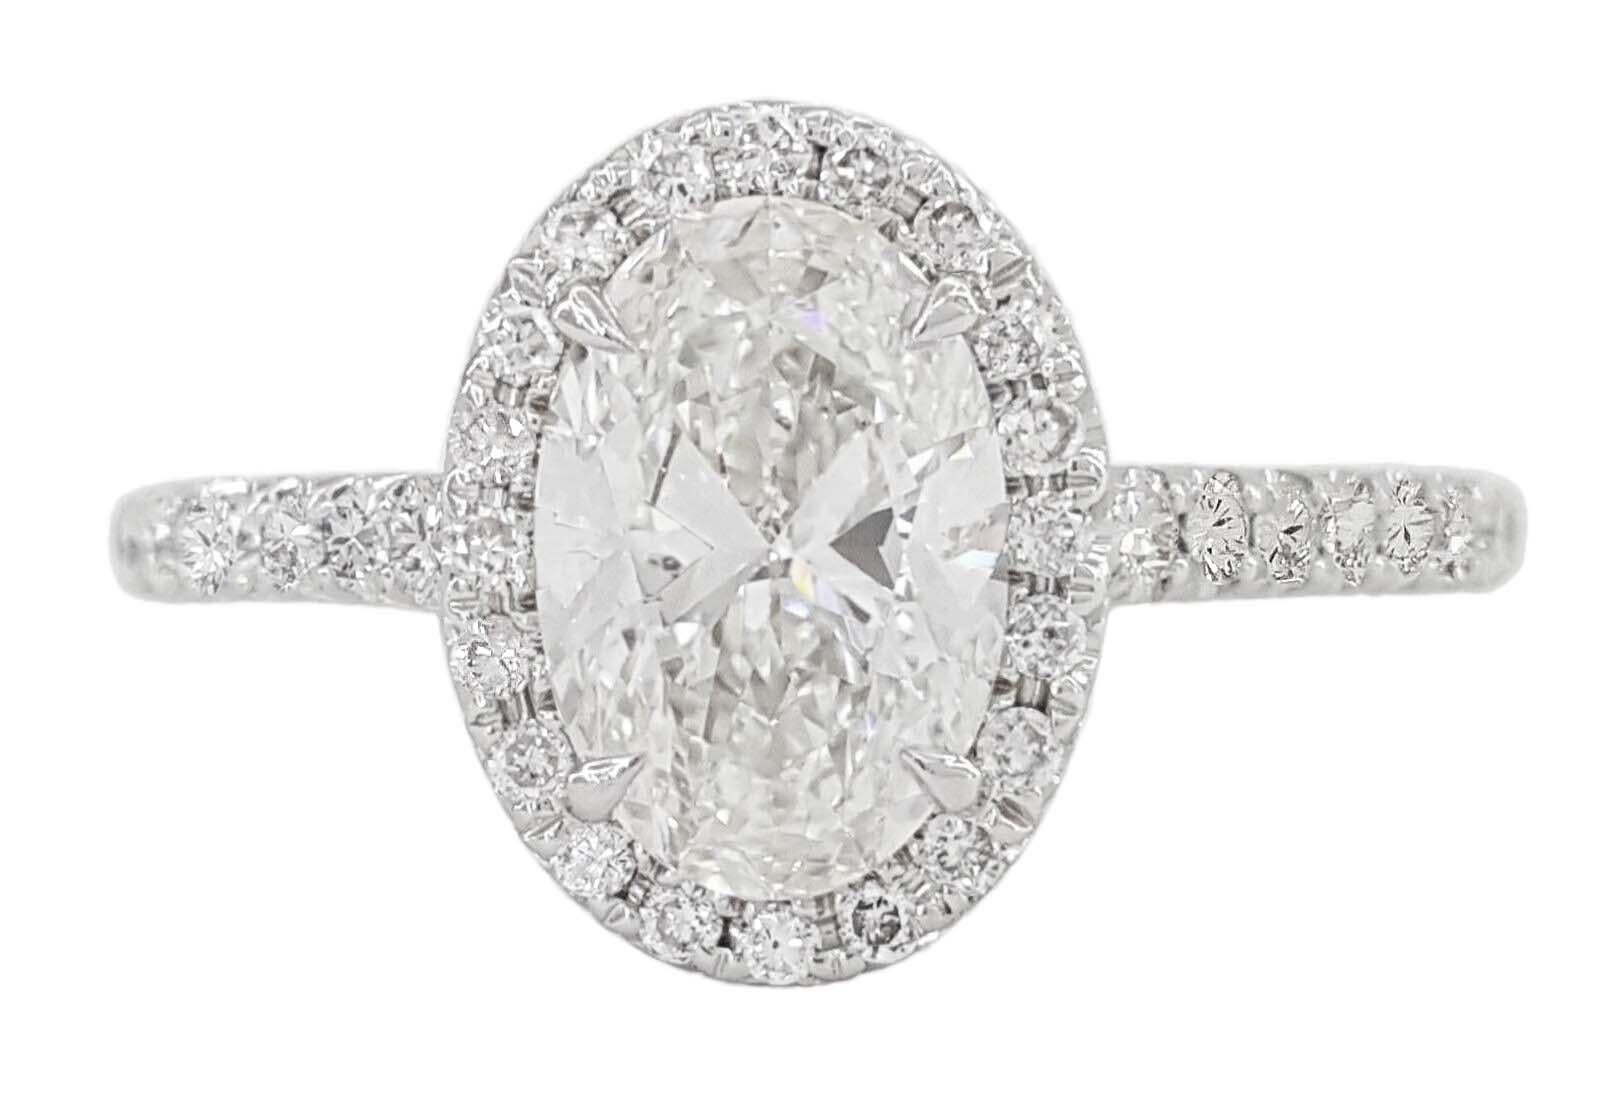 Cette bague captivante est ornée d'un diamant ovale de 2 carats de type IIA, certifié par le GIA !

Elle est entourée d'un halo d'accents Whiting, le tout serti dans un élégant anneau d'or blanc. Le diamant, méticuleusement calibré par le très